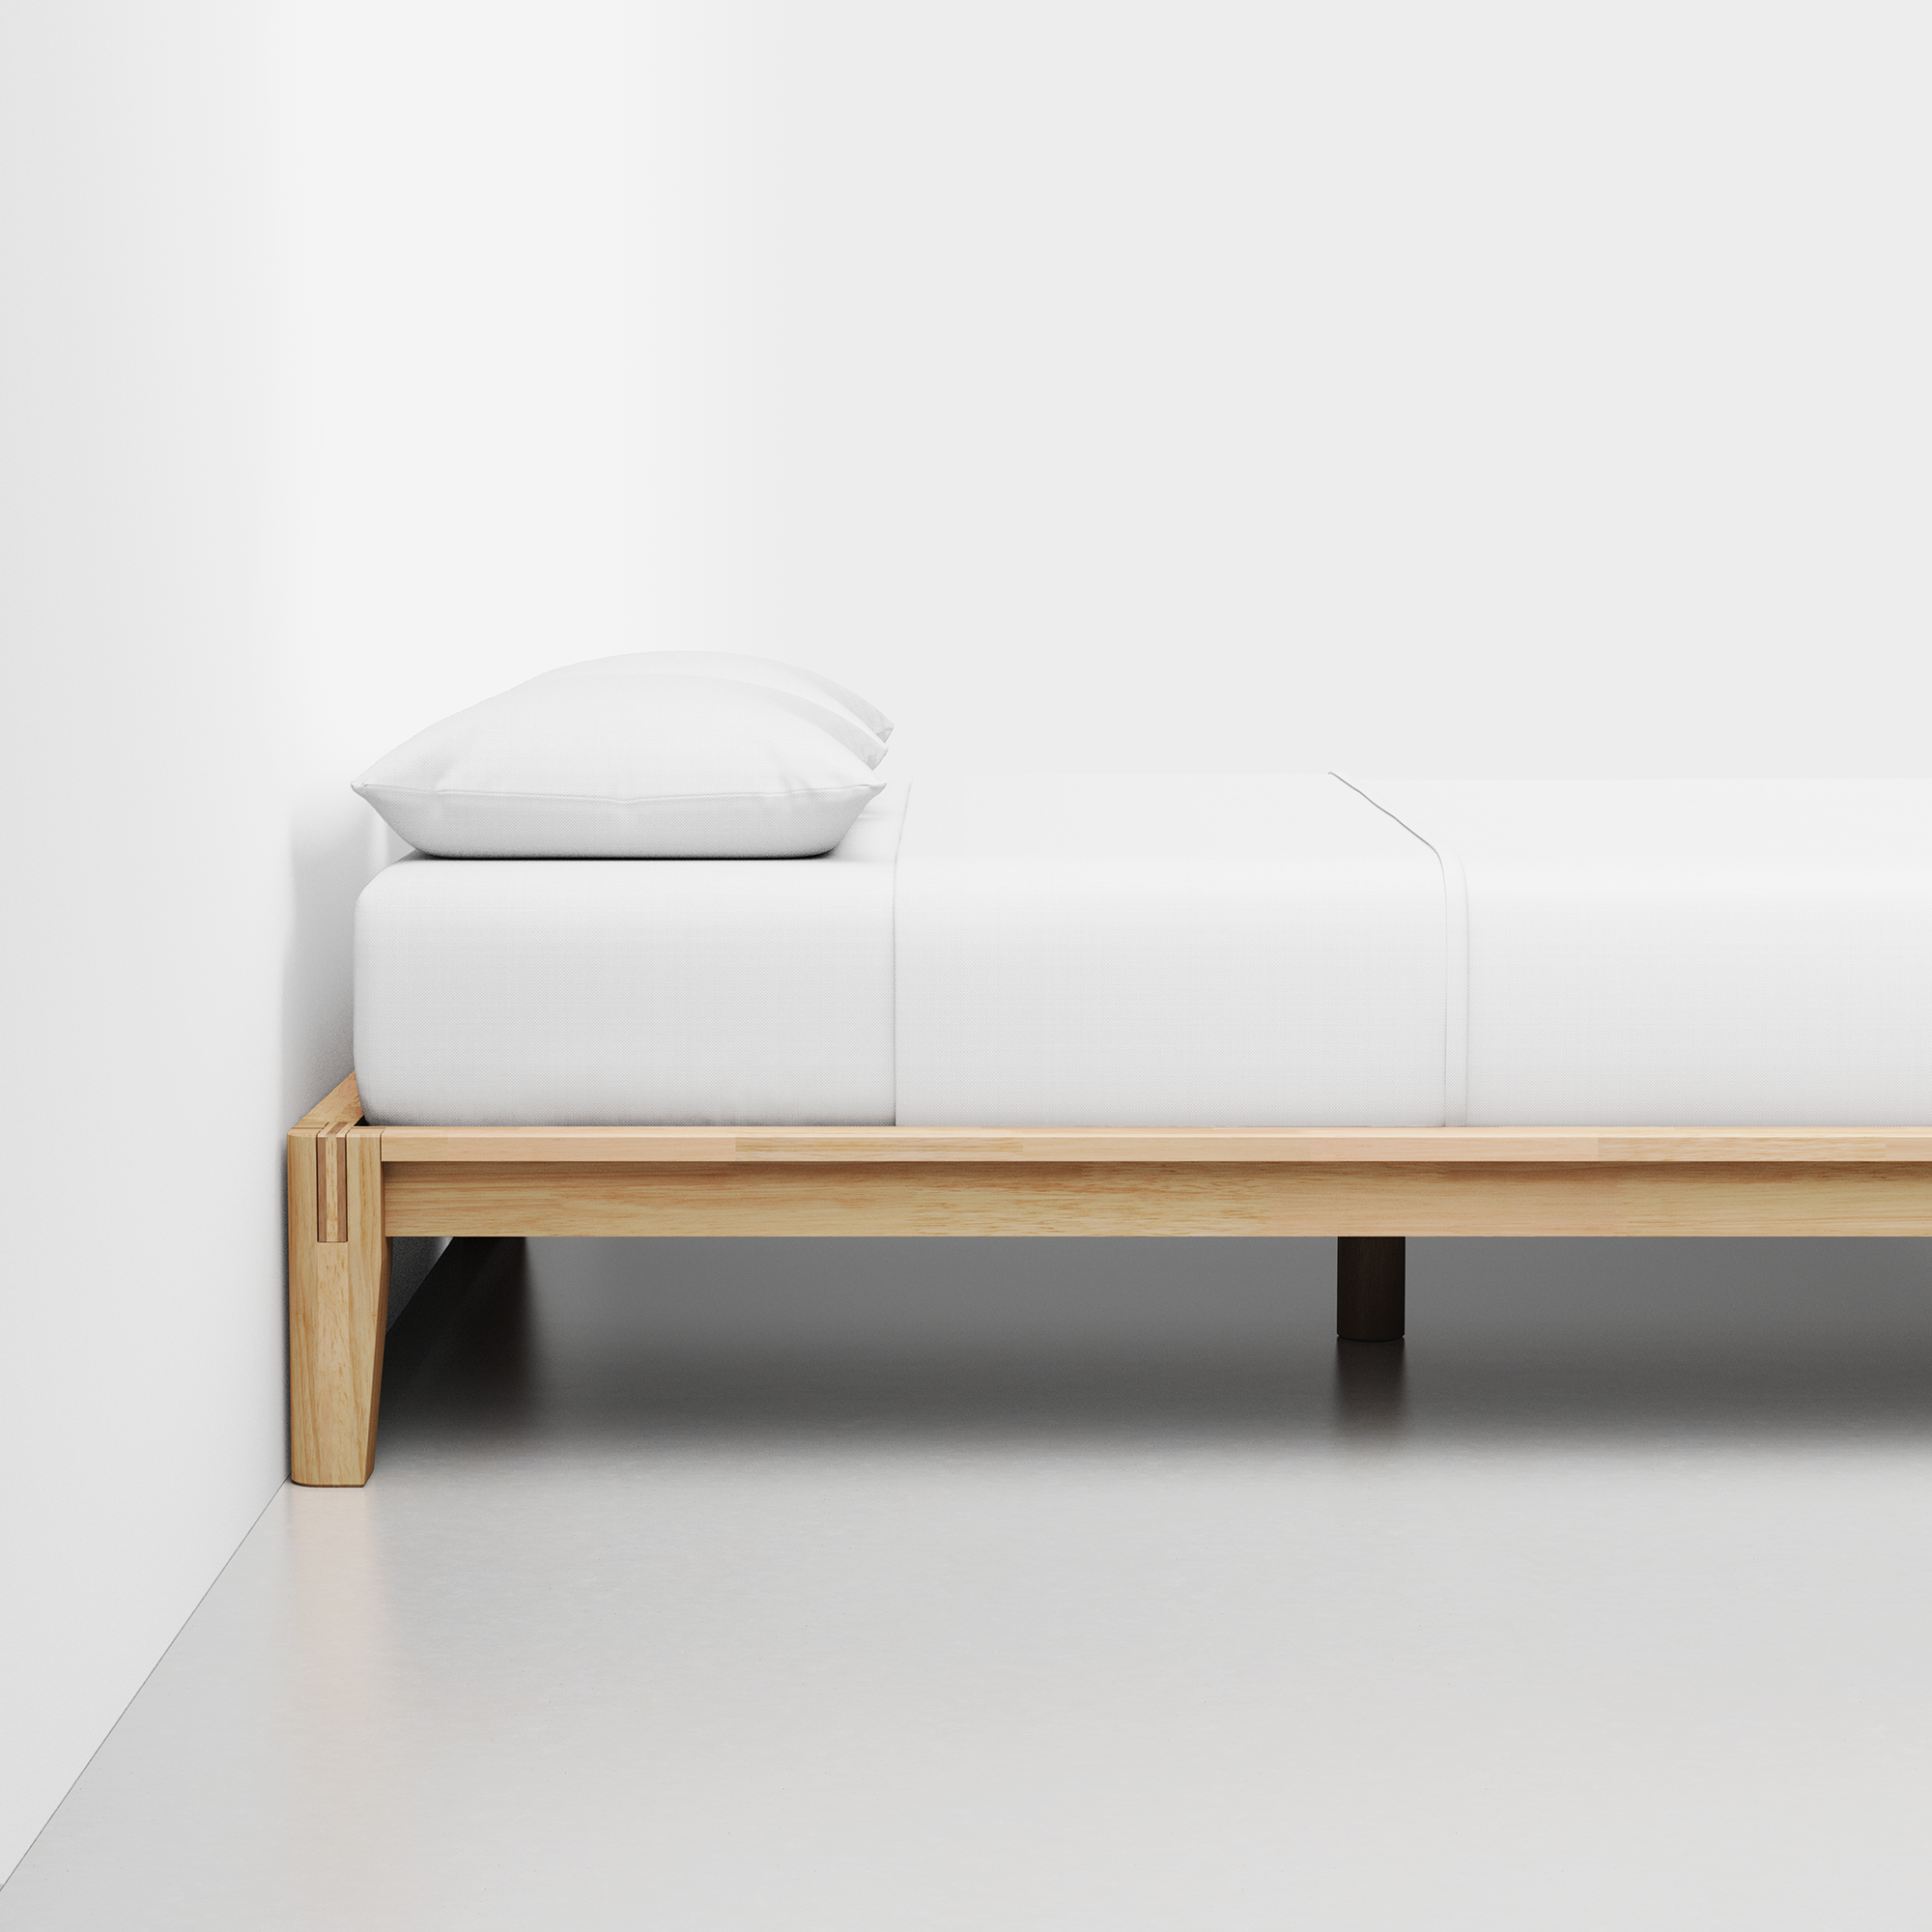 The Bed (Natural / Frame) - Render - Side